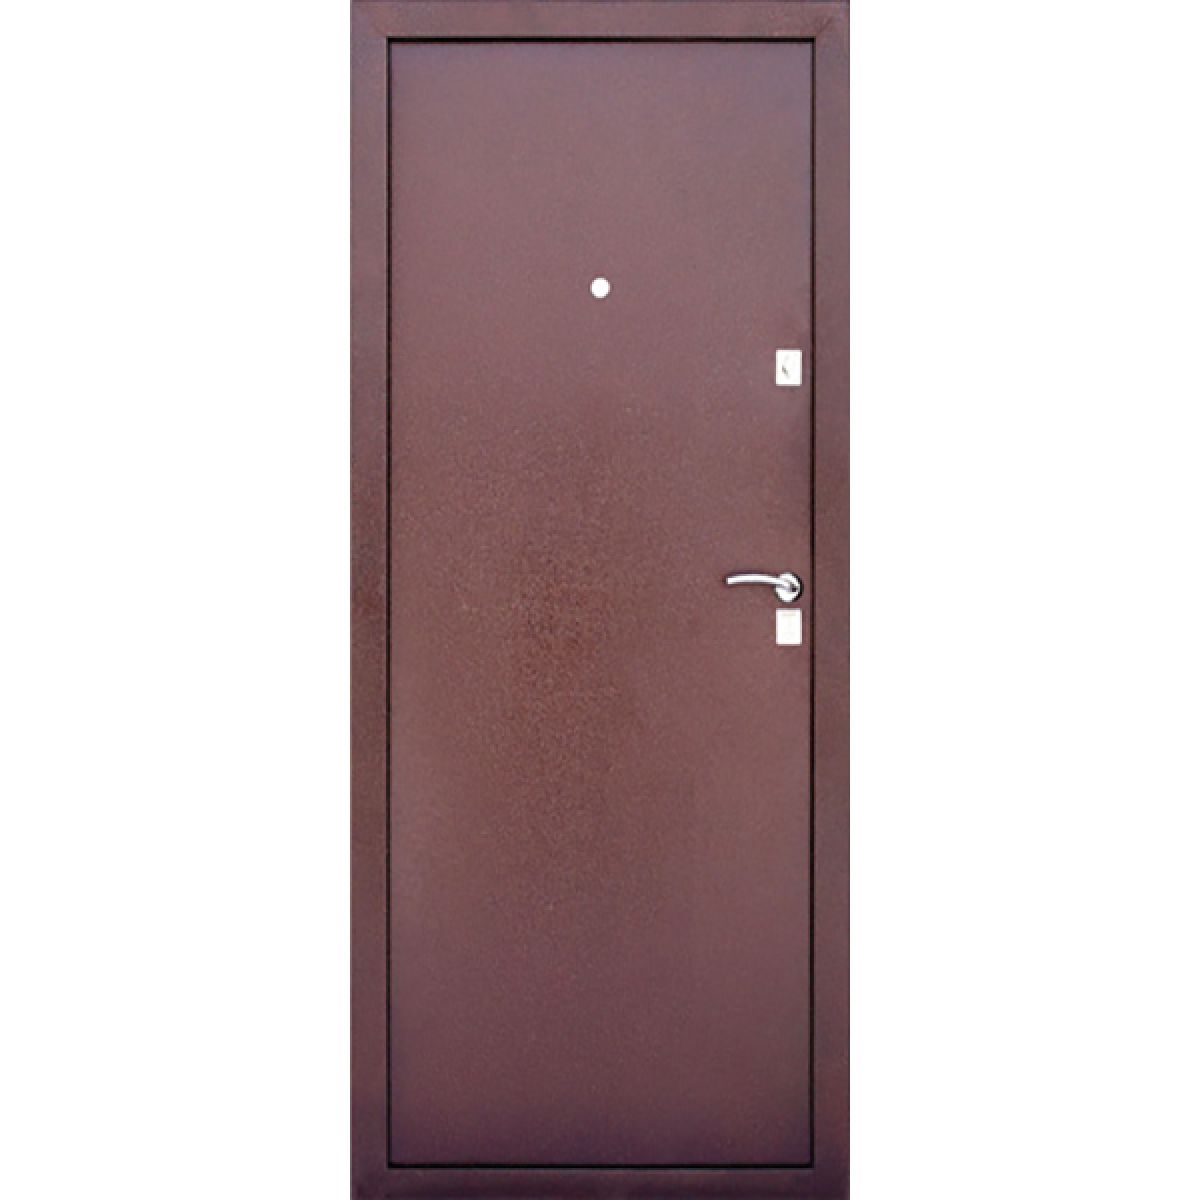 Купить уральскую дверь. Дверь входная модель Hass-70 железная. Уд 101 дверь. Металлическая дверь 70 см. Металлическая дверь шириной 70 см.